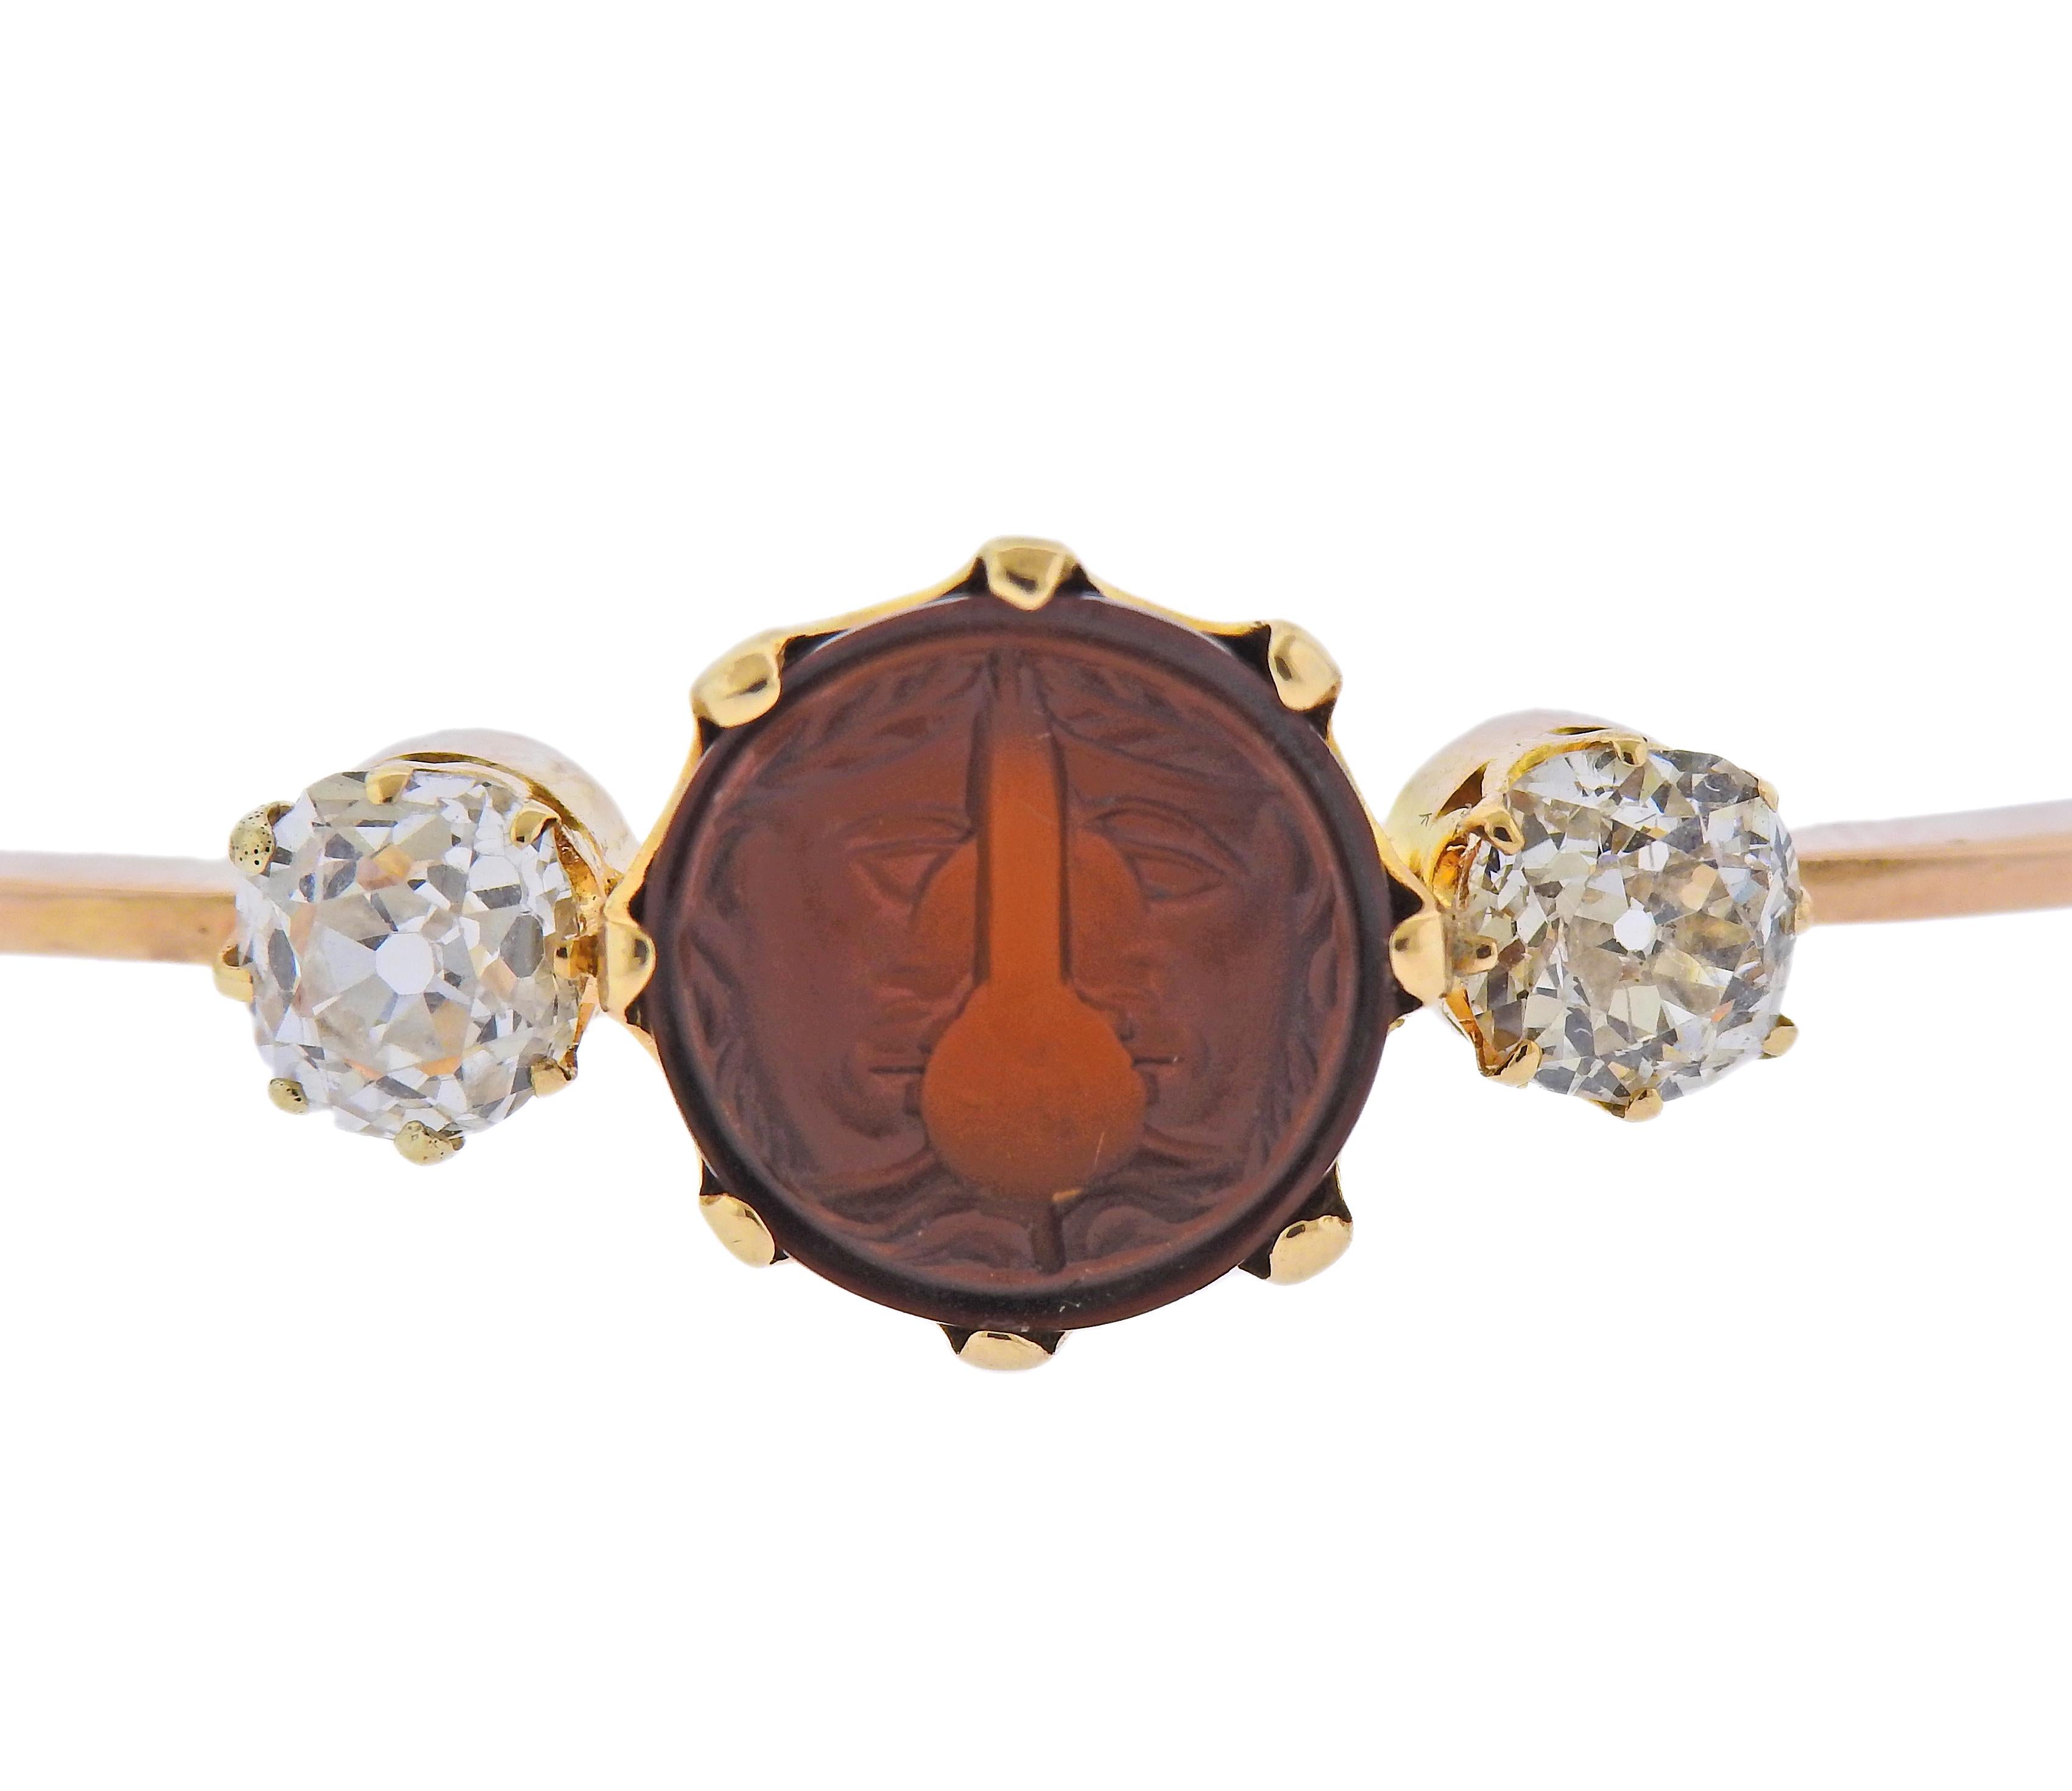 Bracelet ancien en or 18 carats, avec une intaille de cornaline au centre, sertie de deux diamants de taille ancienne - approx. 0.75-0.80ct chacun. Le bracelet s'adapte à un poignet d'environ 7